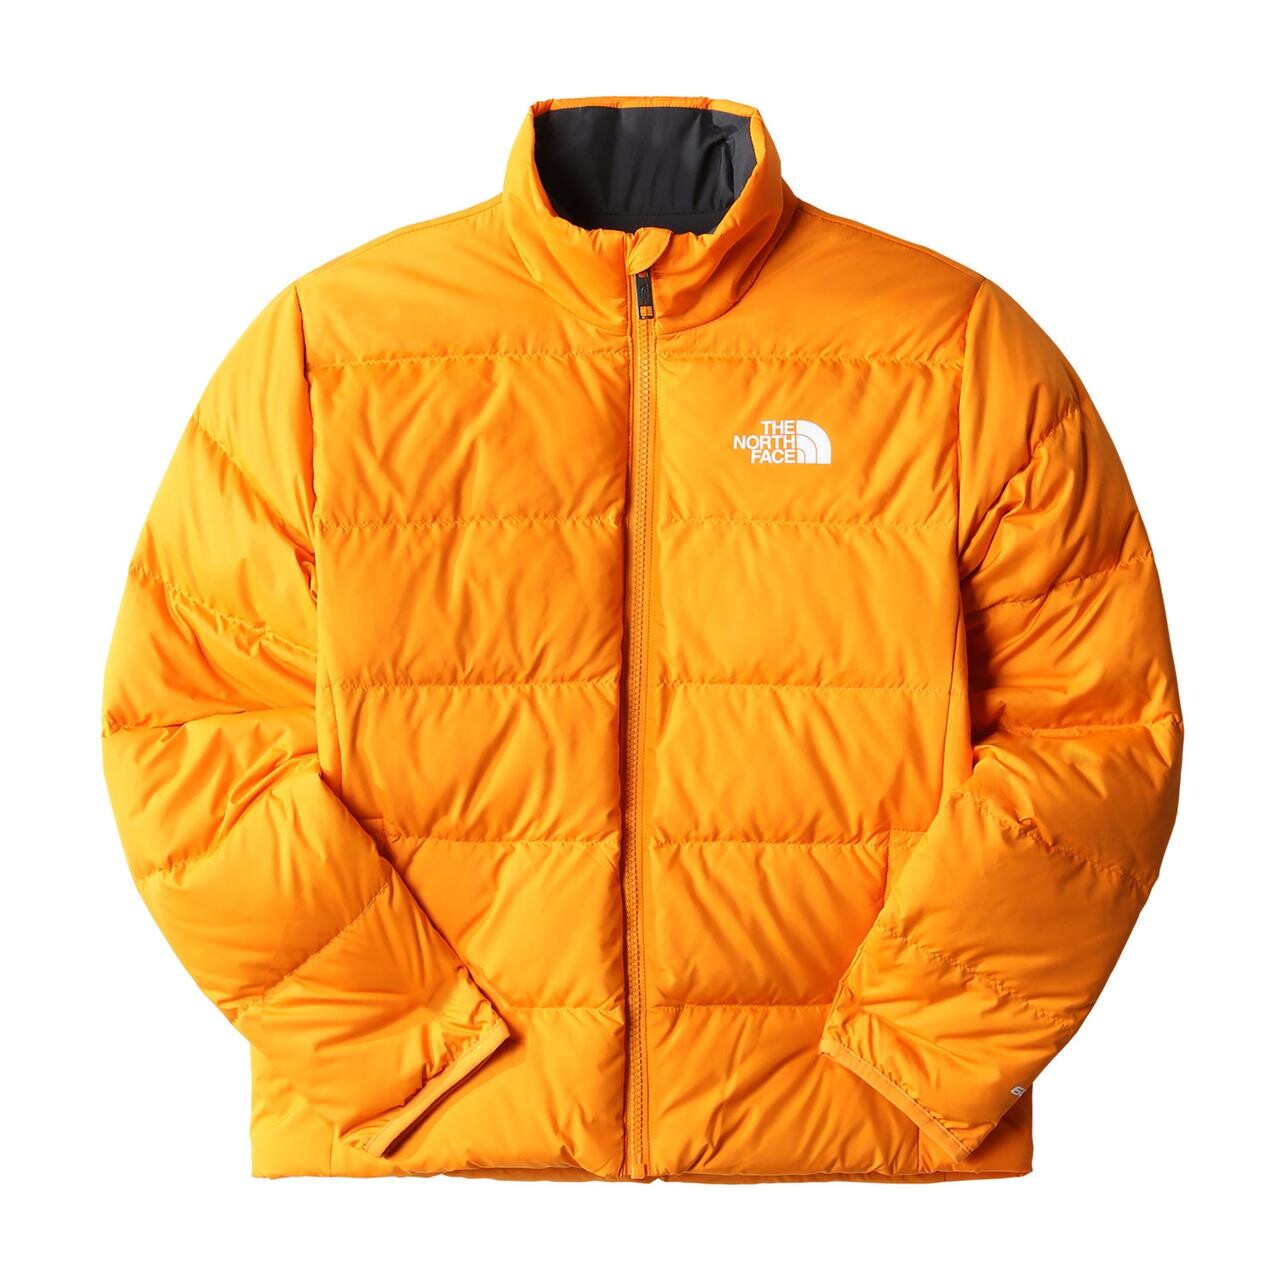 Billede af The North Face Teens Reversible North Down Jacket 2022 model (Orange (CONE ORANGE) Large)